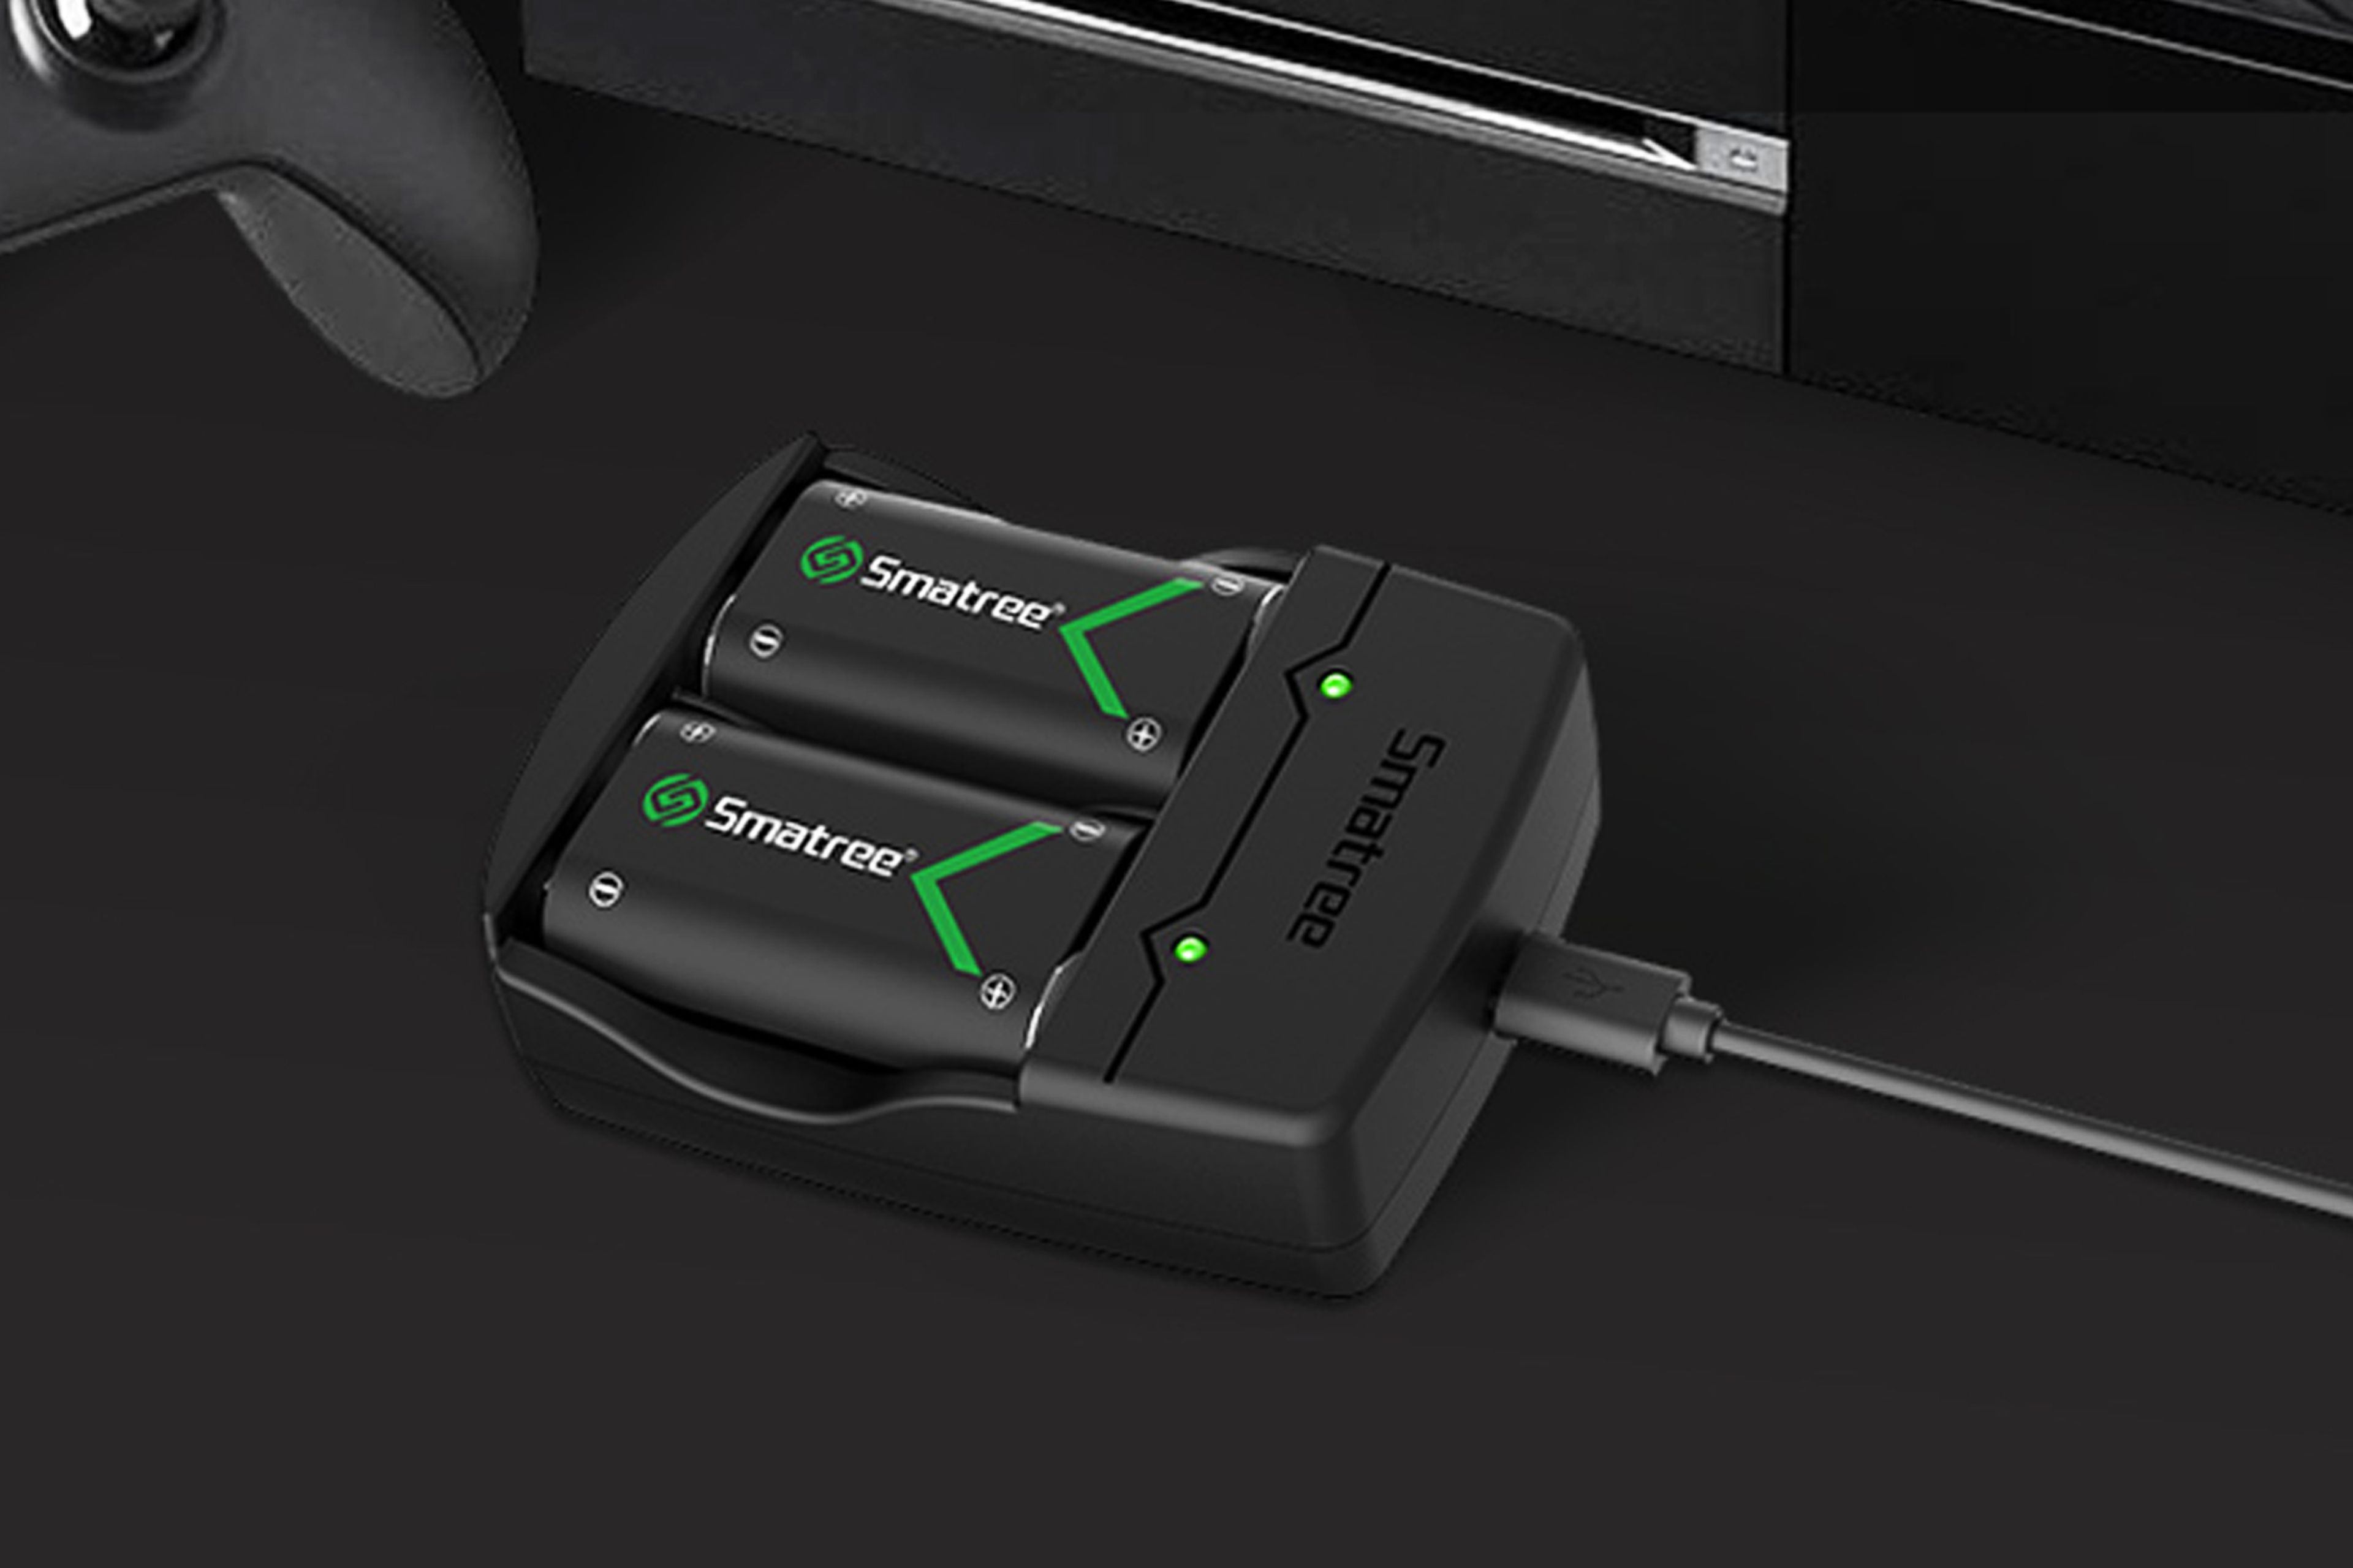 Bateria de Mando Xbox One Recargable + Cable USB Cargador Con